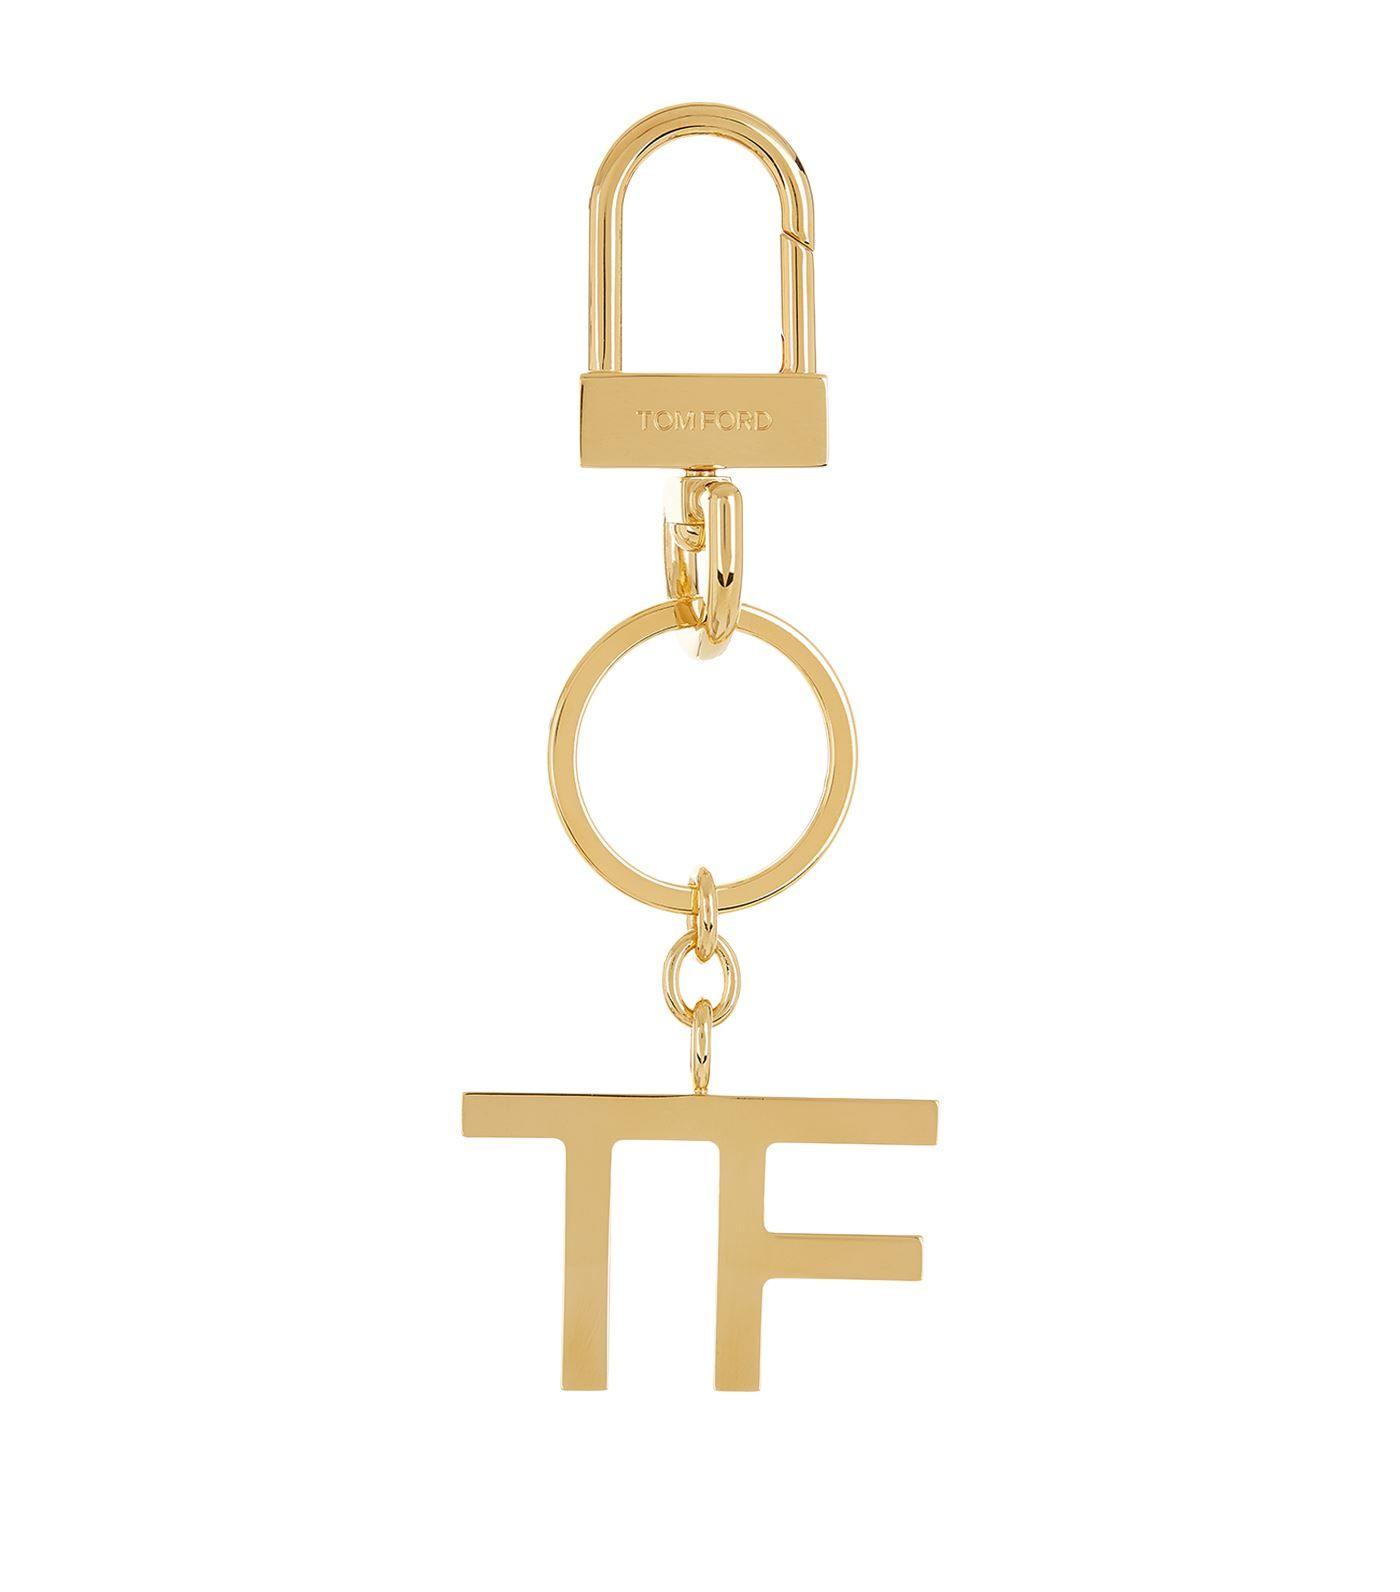 Tom Ford Logo - Tom Ford Logo Keyring In Gold | ModeSens